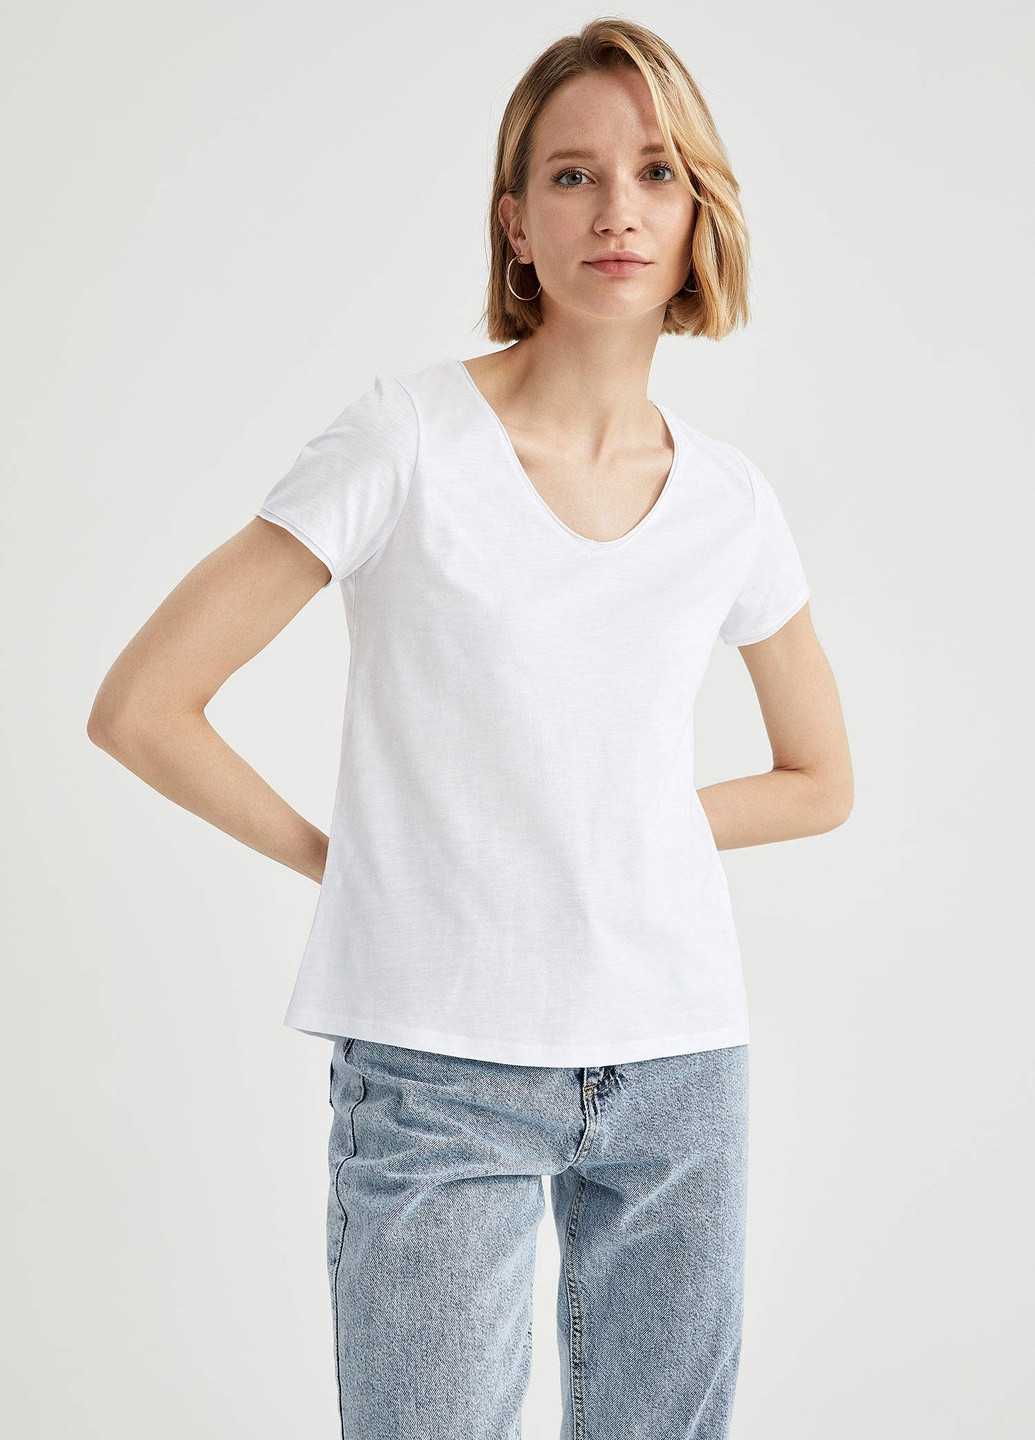 Белая летняя футболка женская хлопковая Nobrend